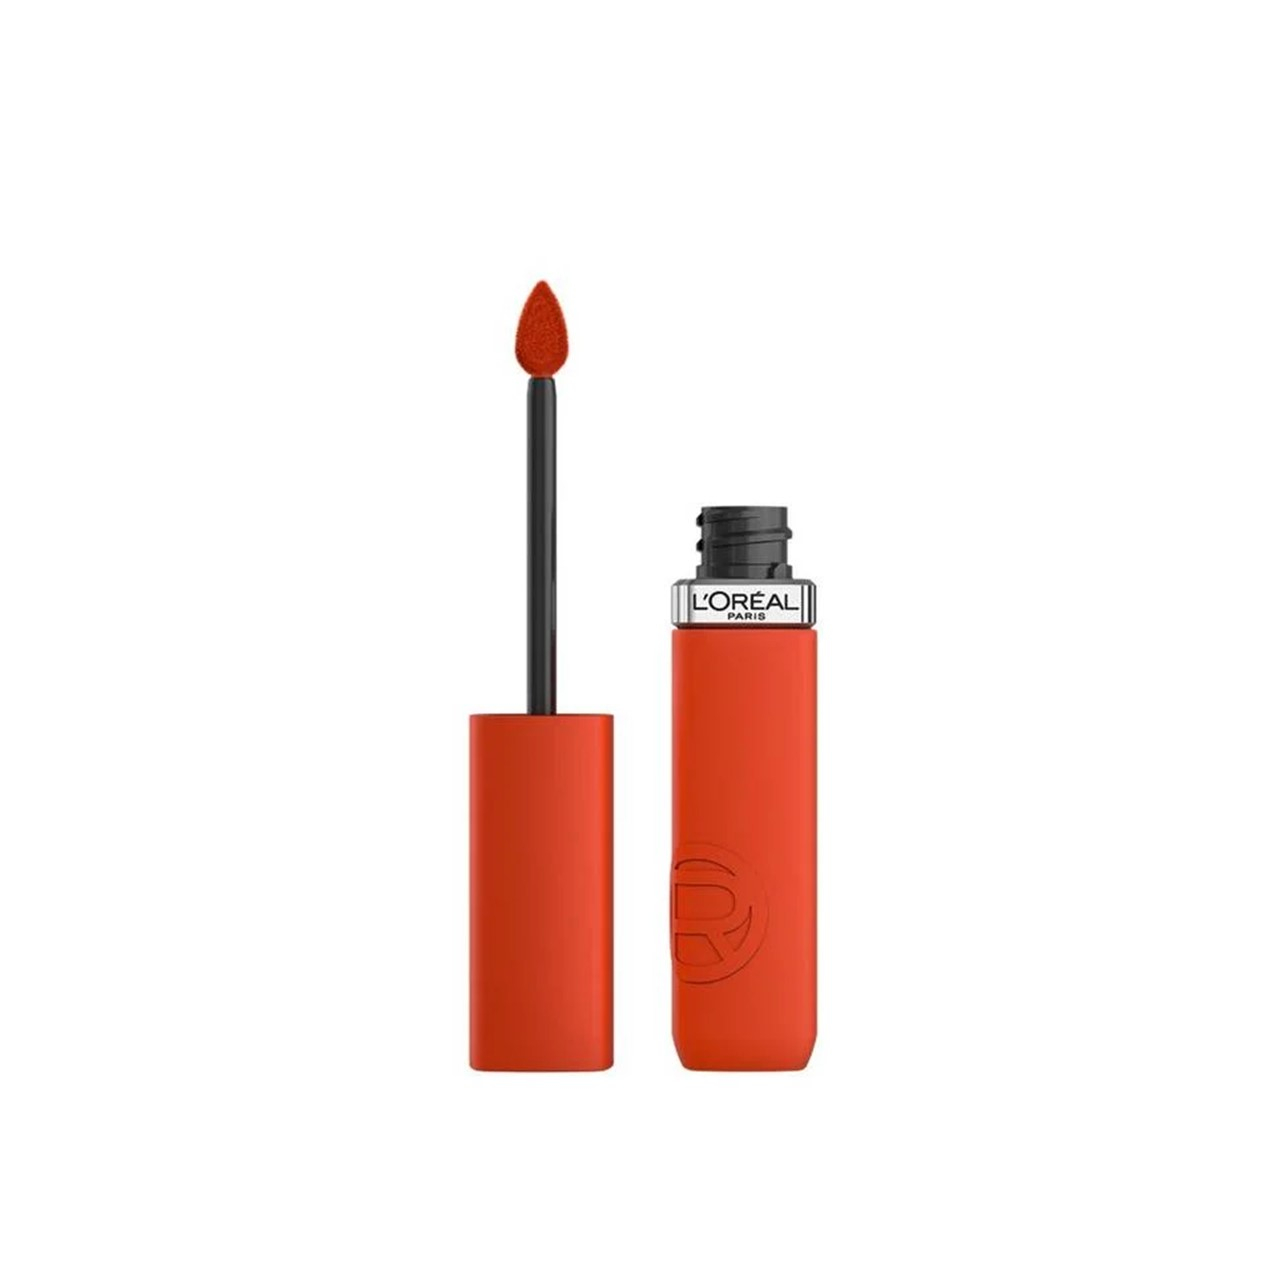 L'Oréal Paris Infallible Matte Resistance Liquid Lipstick 300 Sunbathing 5ml